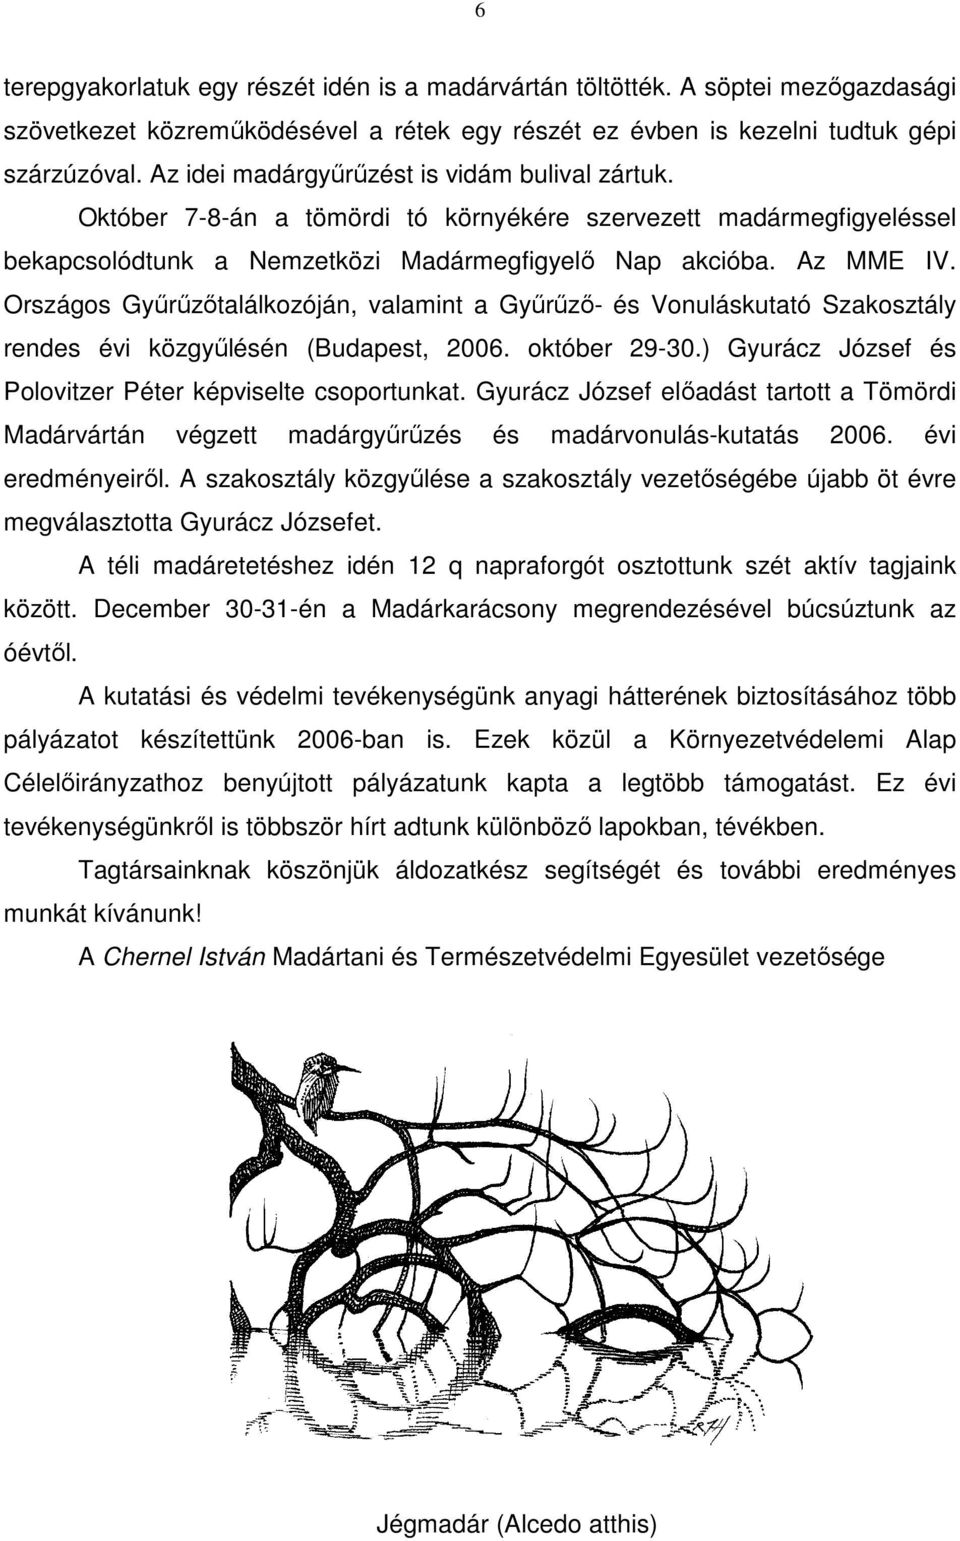 Országos Gyűrűzőtalálkozóján, valamint a Gyűrűző- és Vonuláskutató Szakosztály rendes évi közgyűlésén (Budapest, 2006. október 29-30.) Gyurácz József és Polovitzer Péter képviselte csoportunkat.